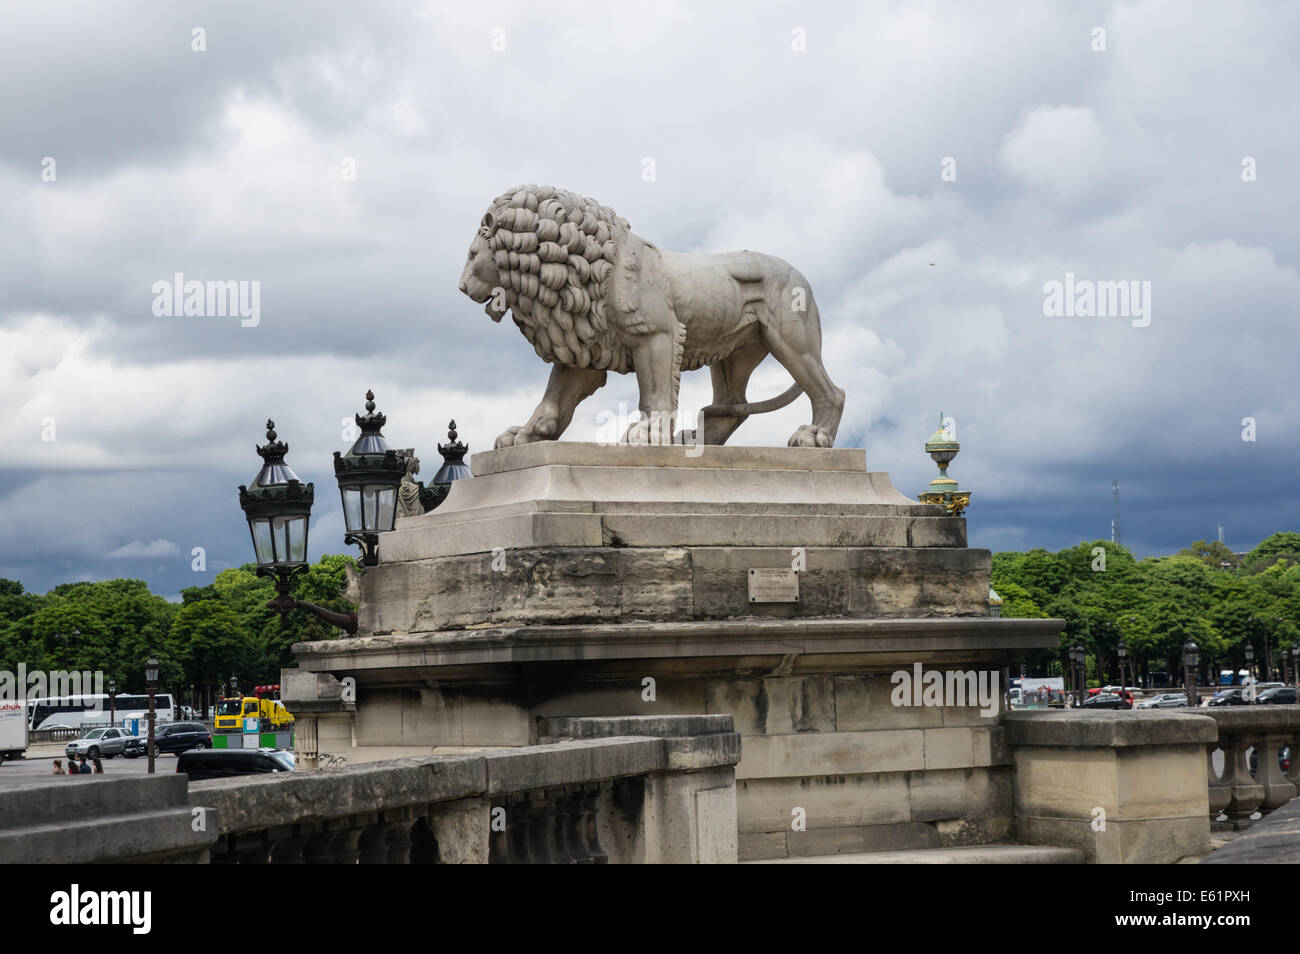 La scultura in pietra di Lion con cielo molto nuvoloso in background, Parigi, Francia Foto Stock